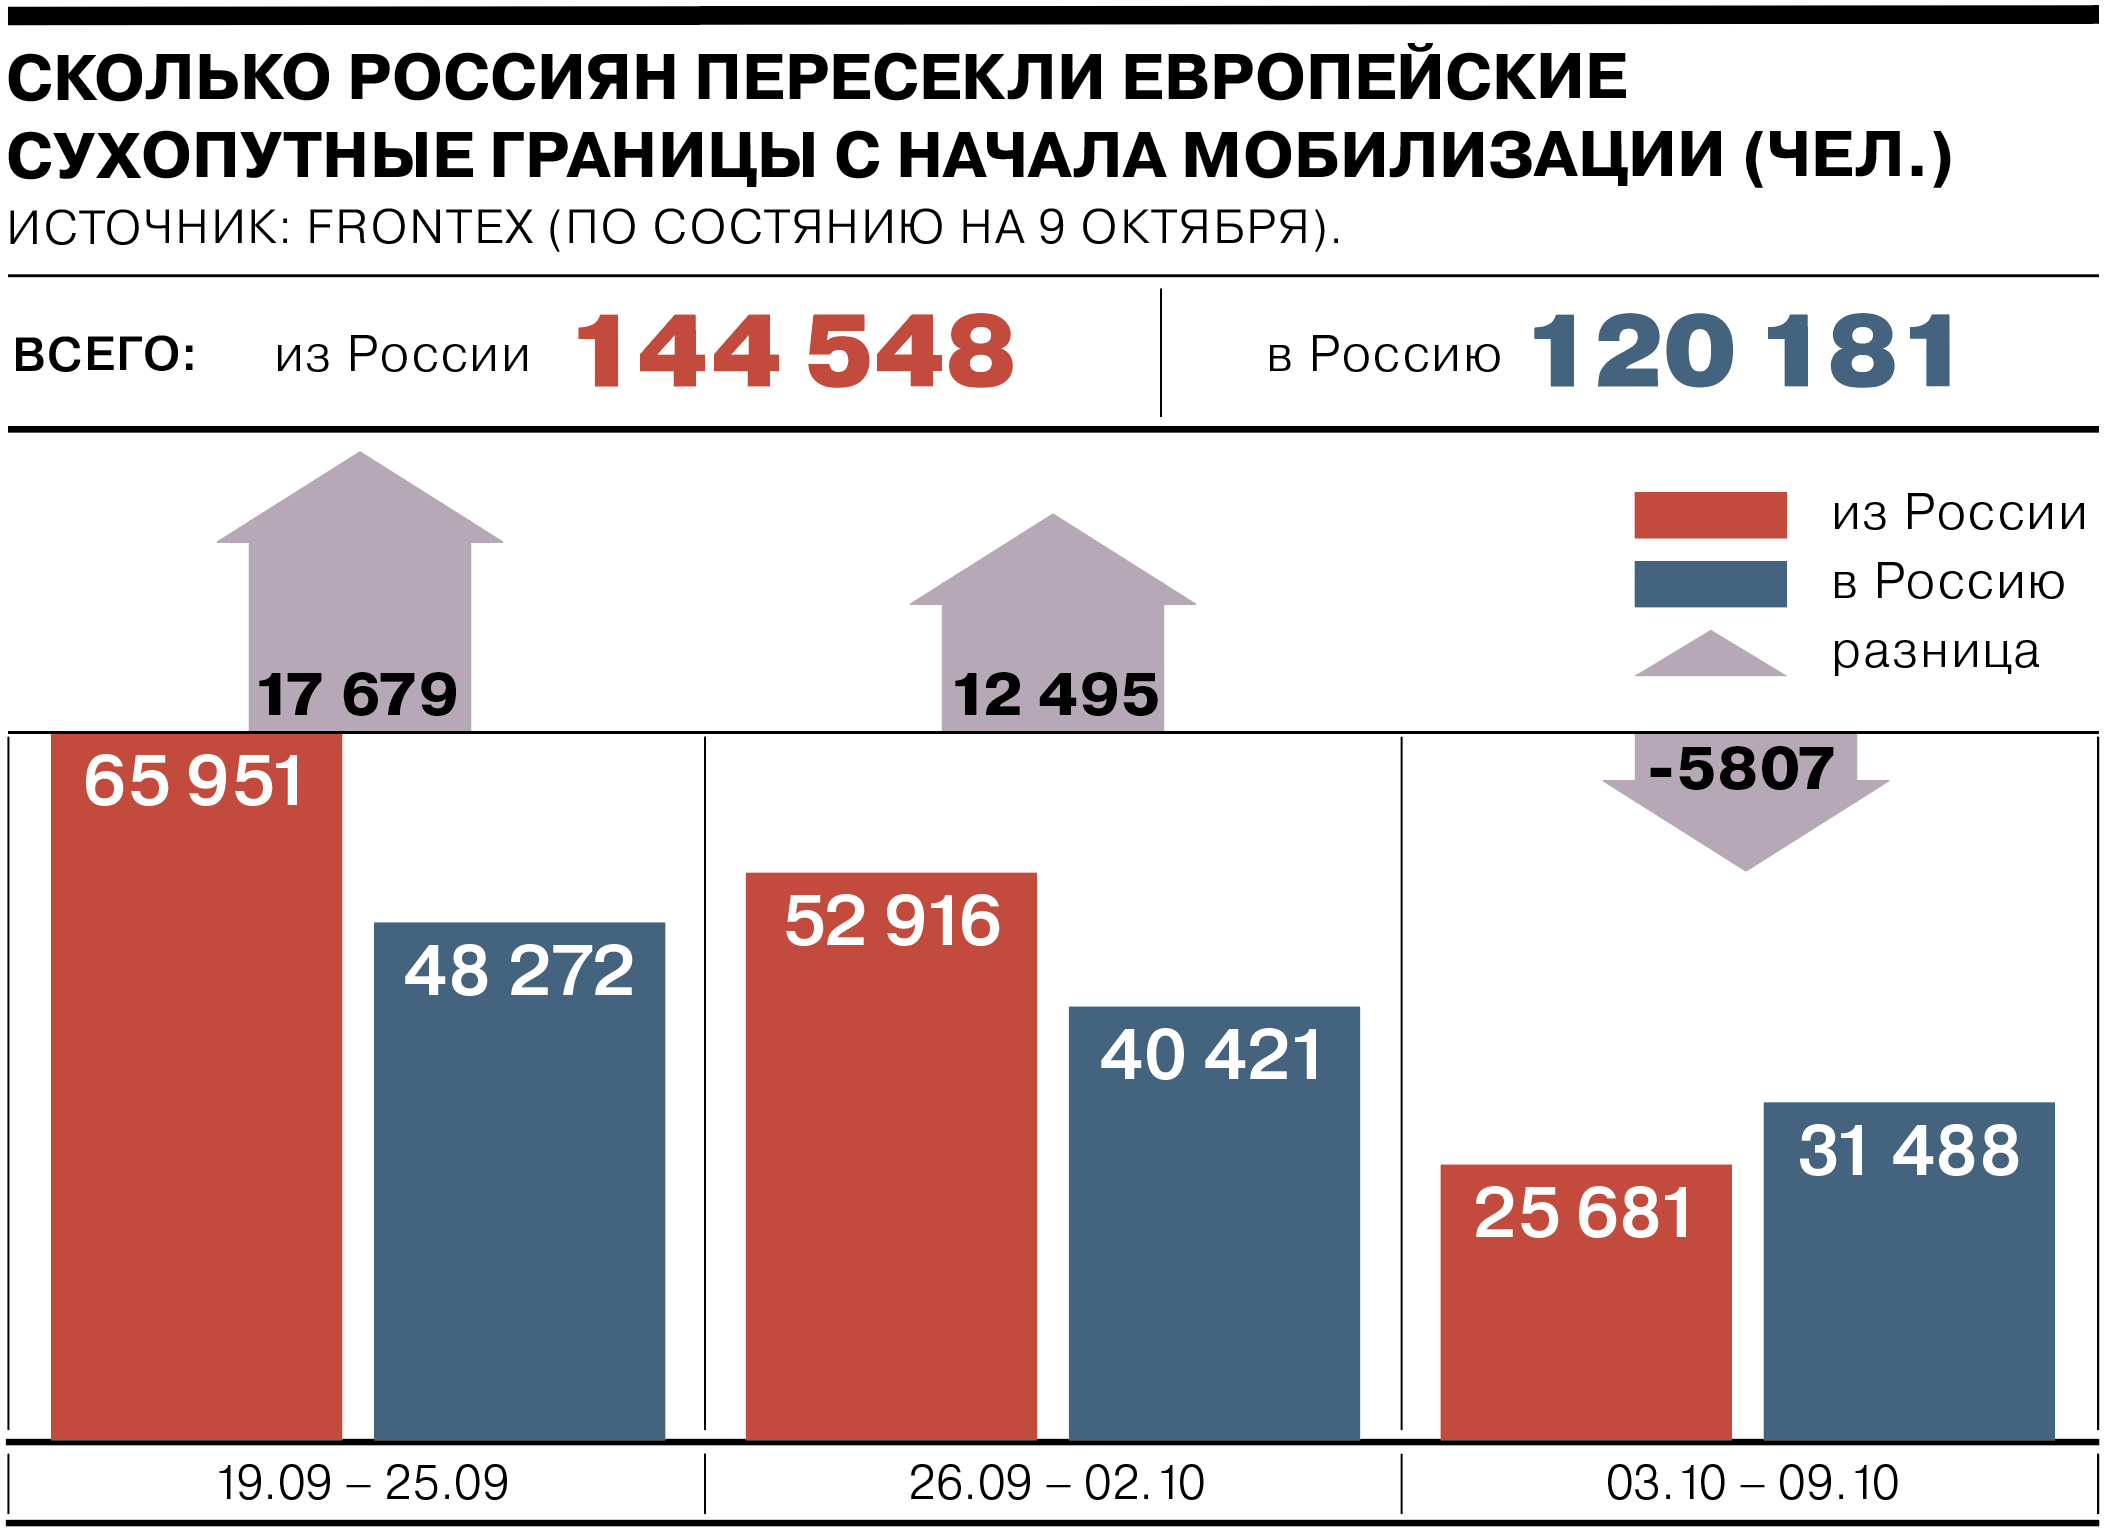 Статистика мобилизации. Количество мобилизированных в России. Число мобилизованных по регионам. Количество мобилизованных по регионам.